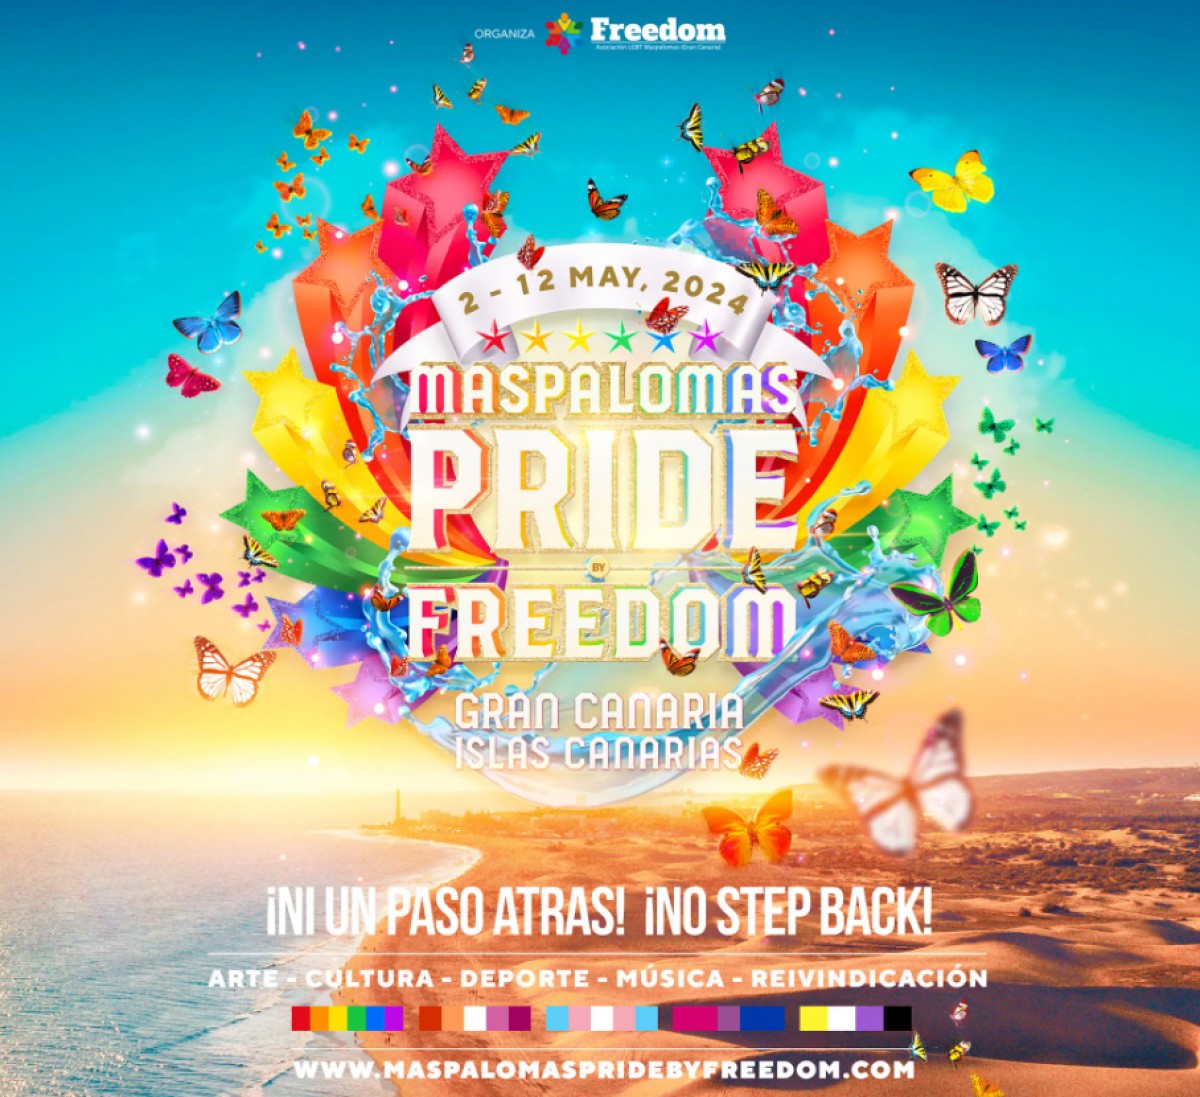 Maspalomas Pride, l'évènement LGBT termine en orgie dans un lieu public